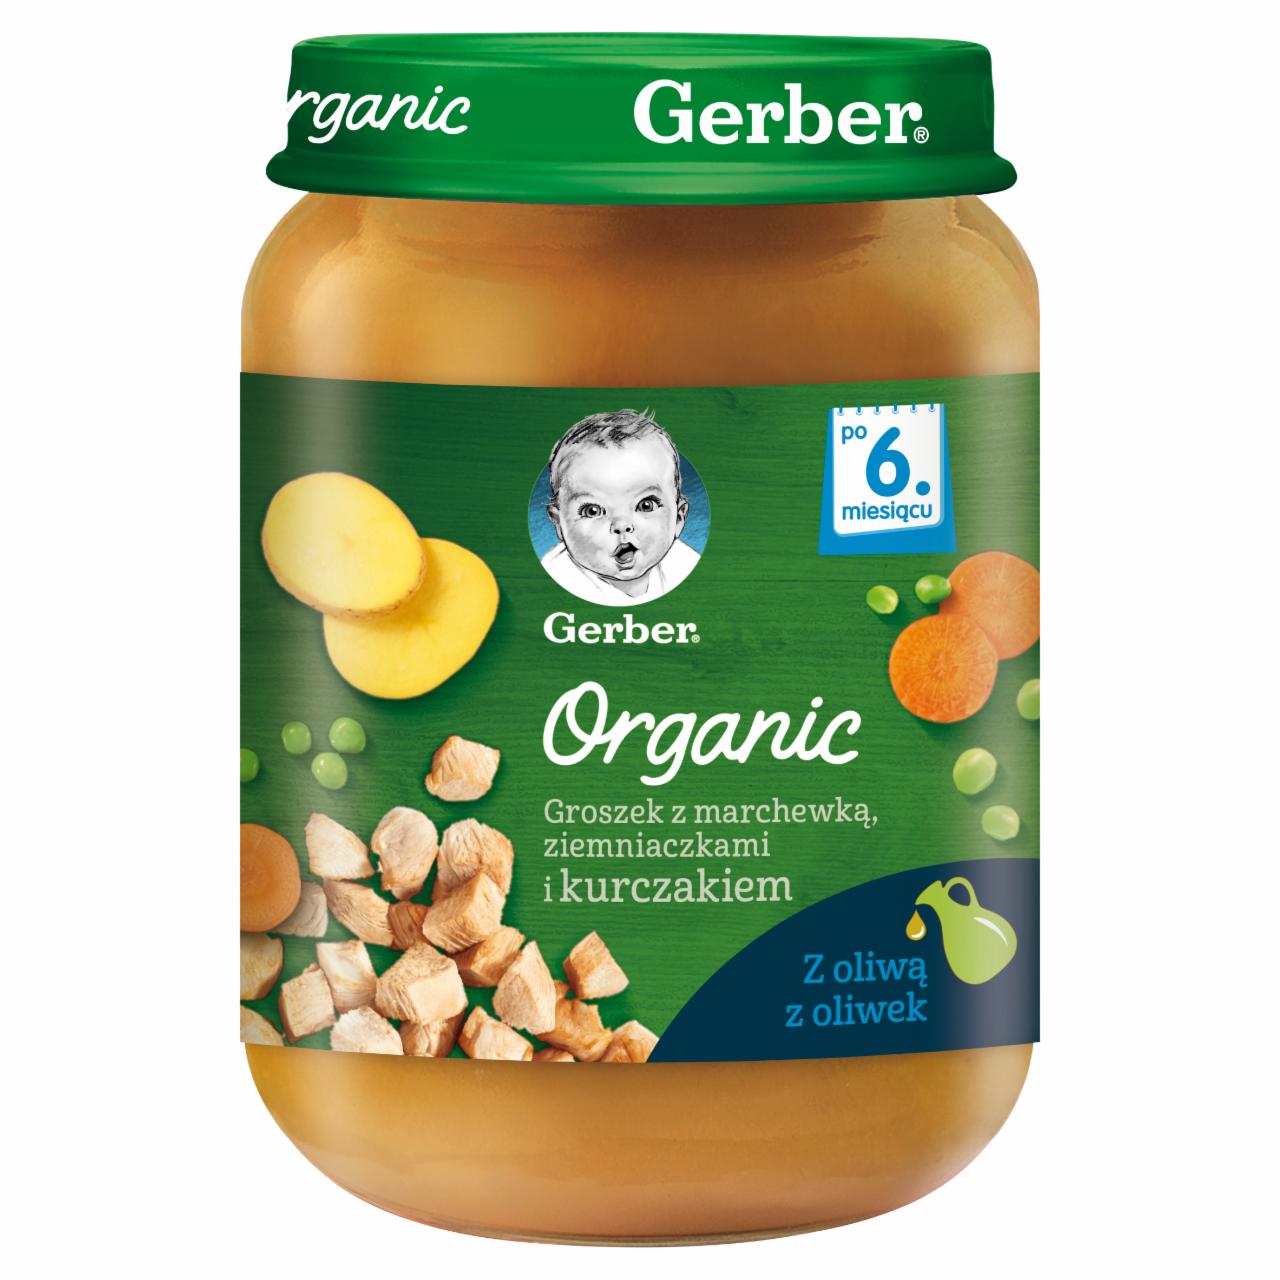 Zdjęcia - Gerber Organic Groszek z marchewką ziemniaczkami i kurczakiem dla niemowląt po 6. miesiącu 190 g